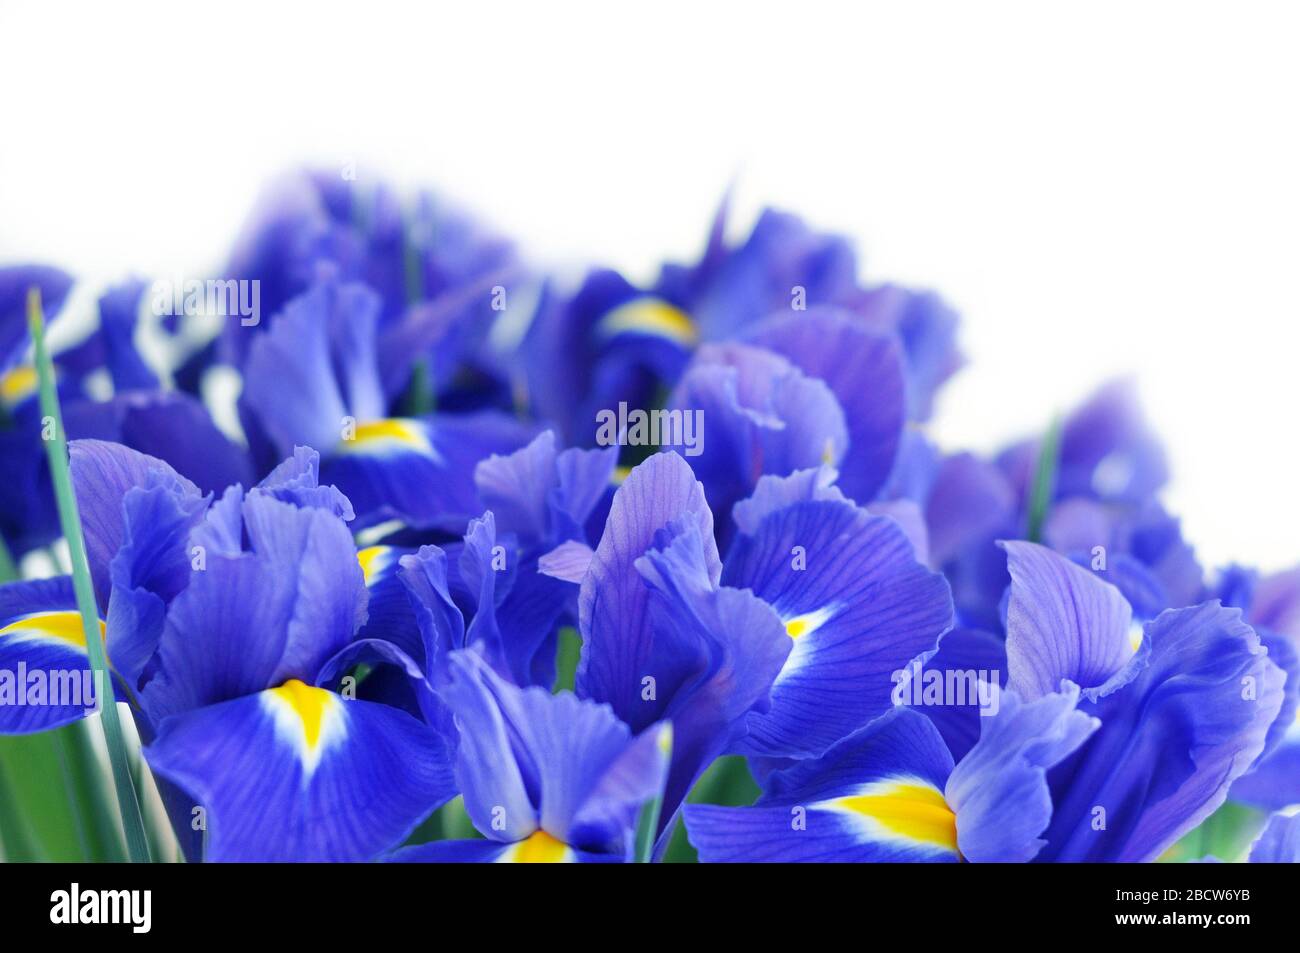 Frühlings-Blumenstrauß aus blauen Irissen. Schöne Blumen auf weißem Hintergrund und Platz für Text. Stockfoto